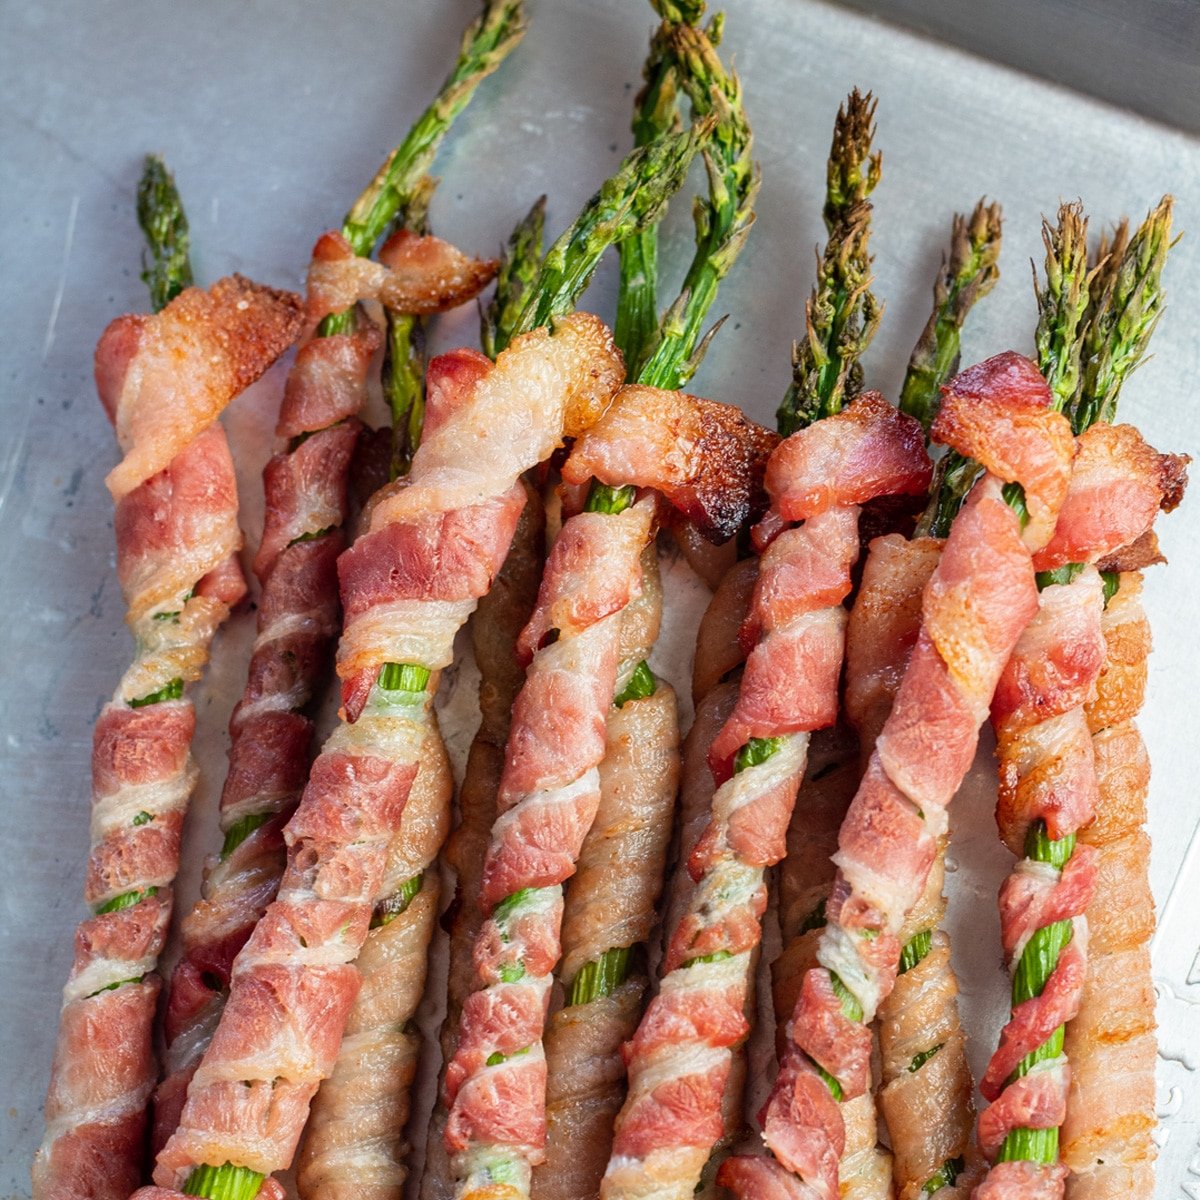 De délicieux asperges enveloppées de bacon cuit sur un plateau en métal.